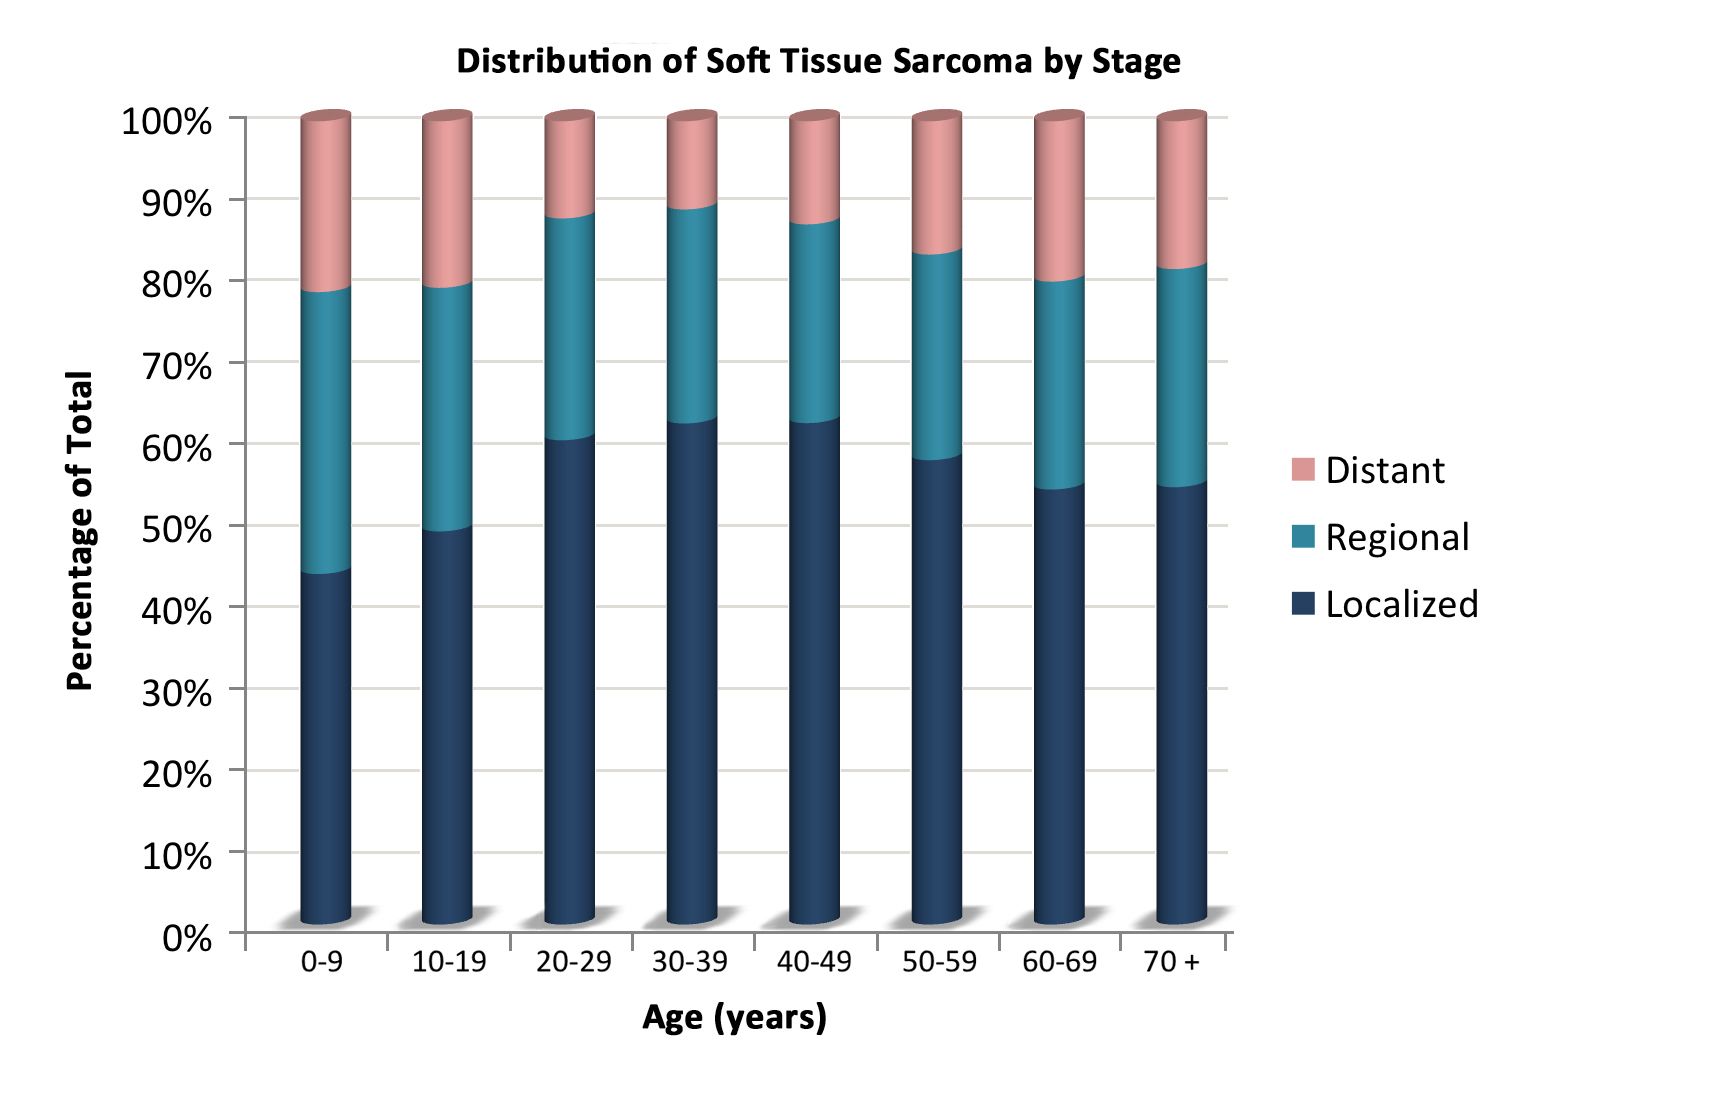 表は、病期に応じた年齢ごとの非横紋筋肉腫性軟部肉腫の分布を示す。